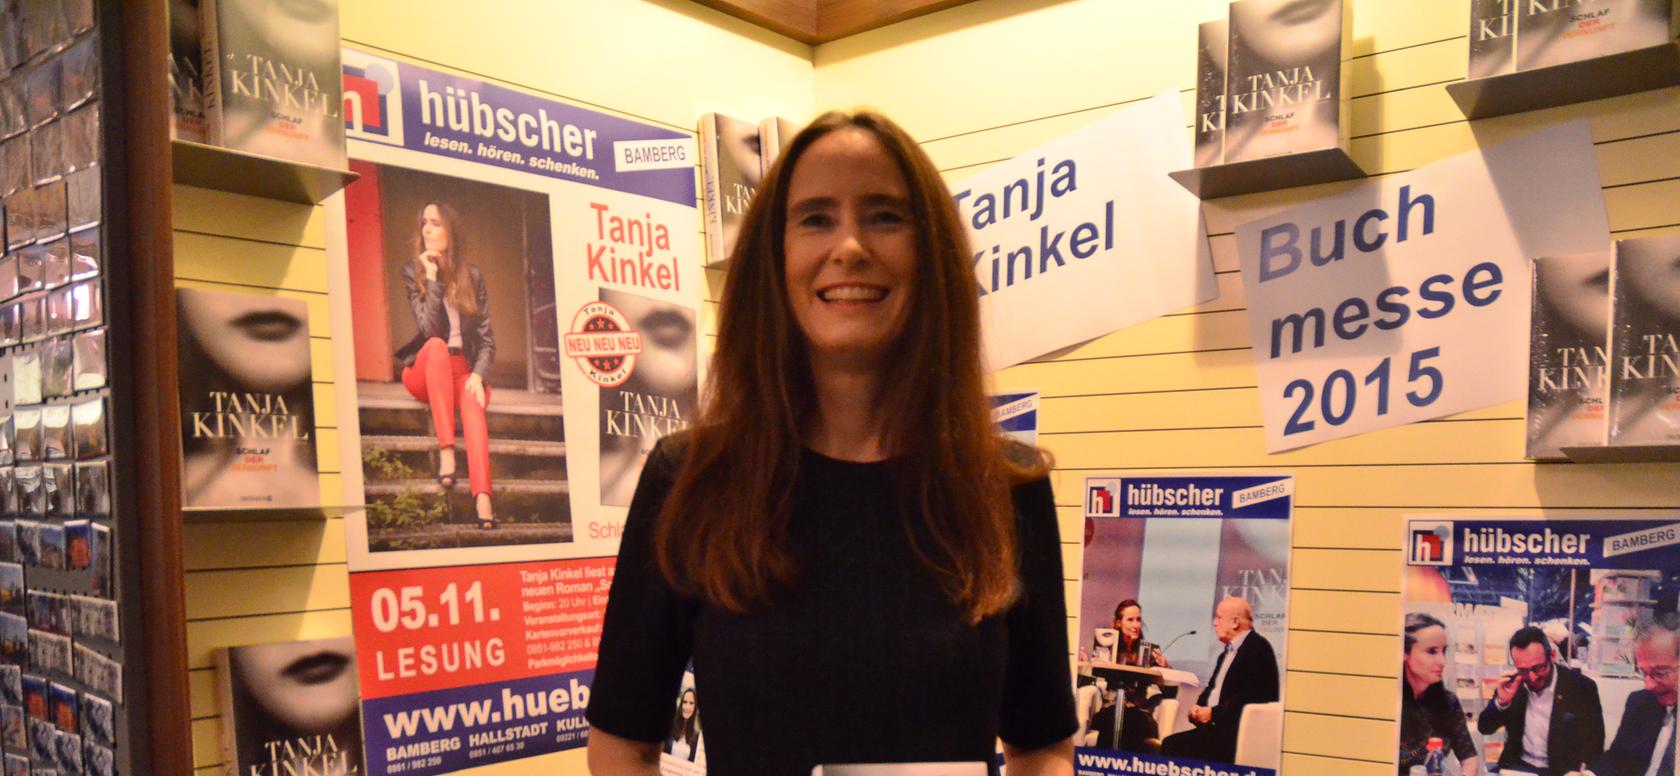 Die berühmte Bamberger Schriftstellerin Tanja Kinkel stellte am Donnerstag ihren neuen Roman "Schlaf der Vernunft" im Buch und Medienhaus Hübscher vor.